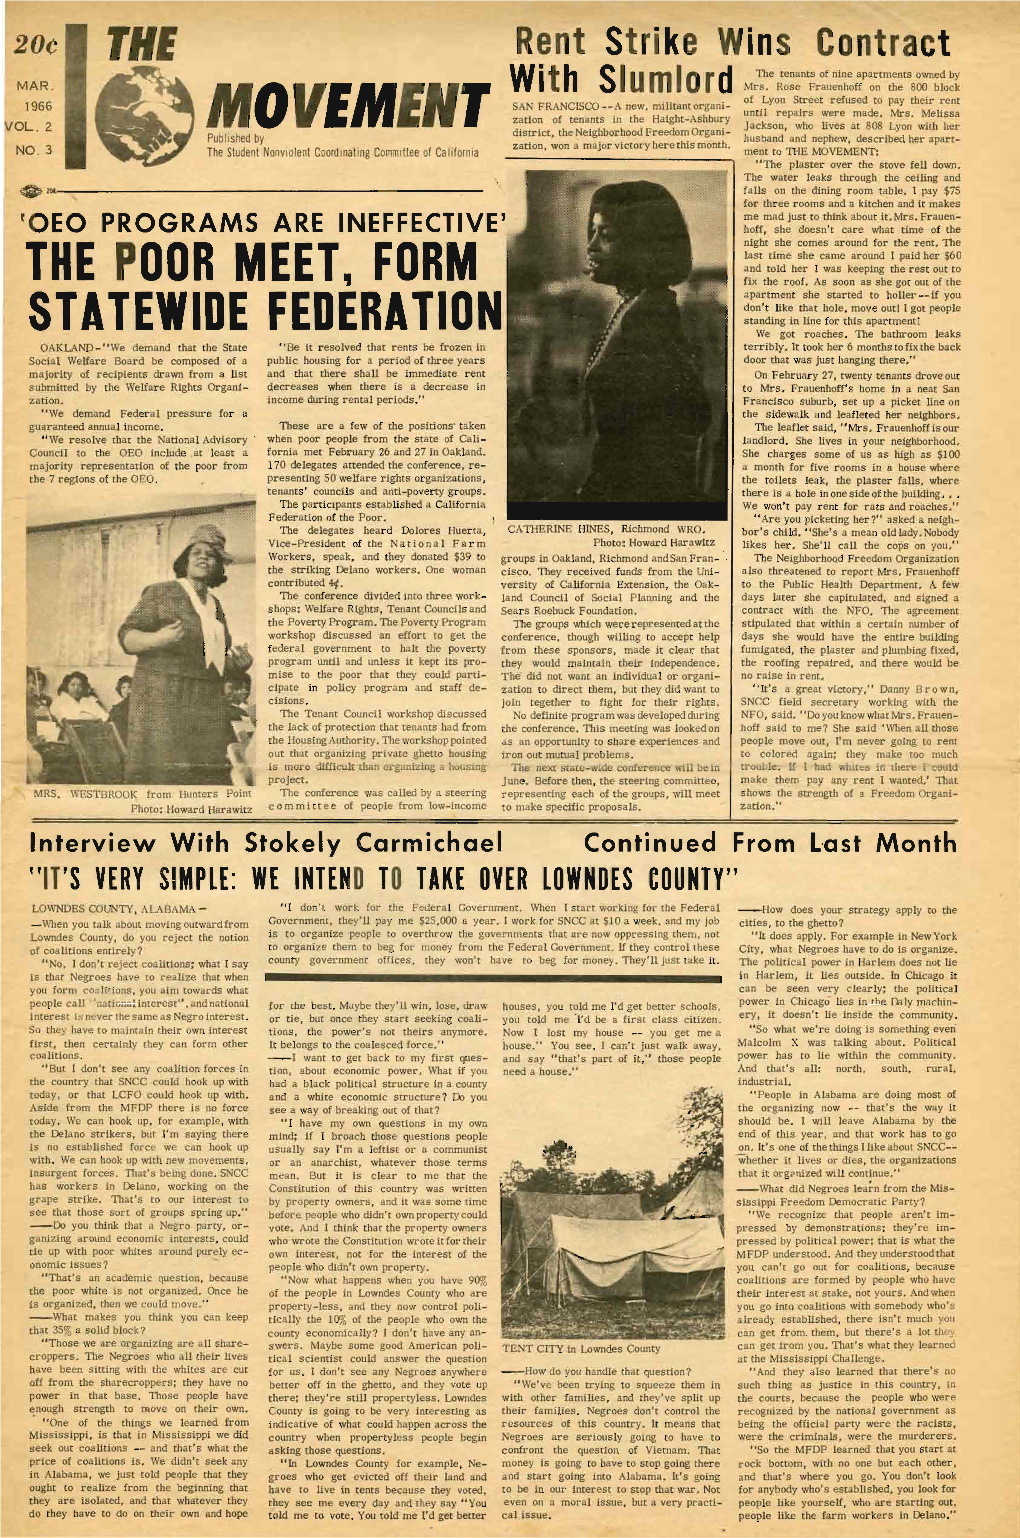 The Movement, March 1966. Vol. 2 No. 3